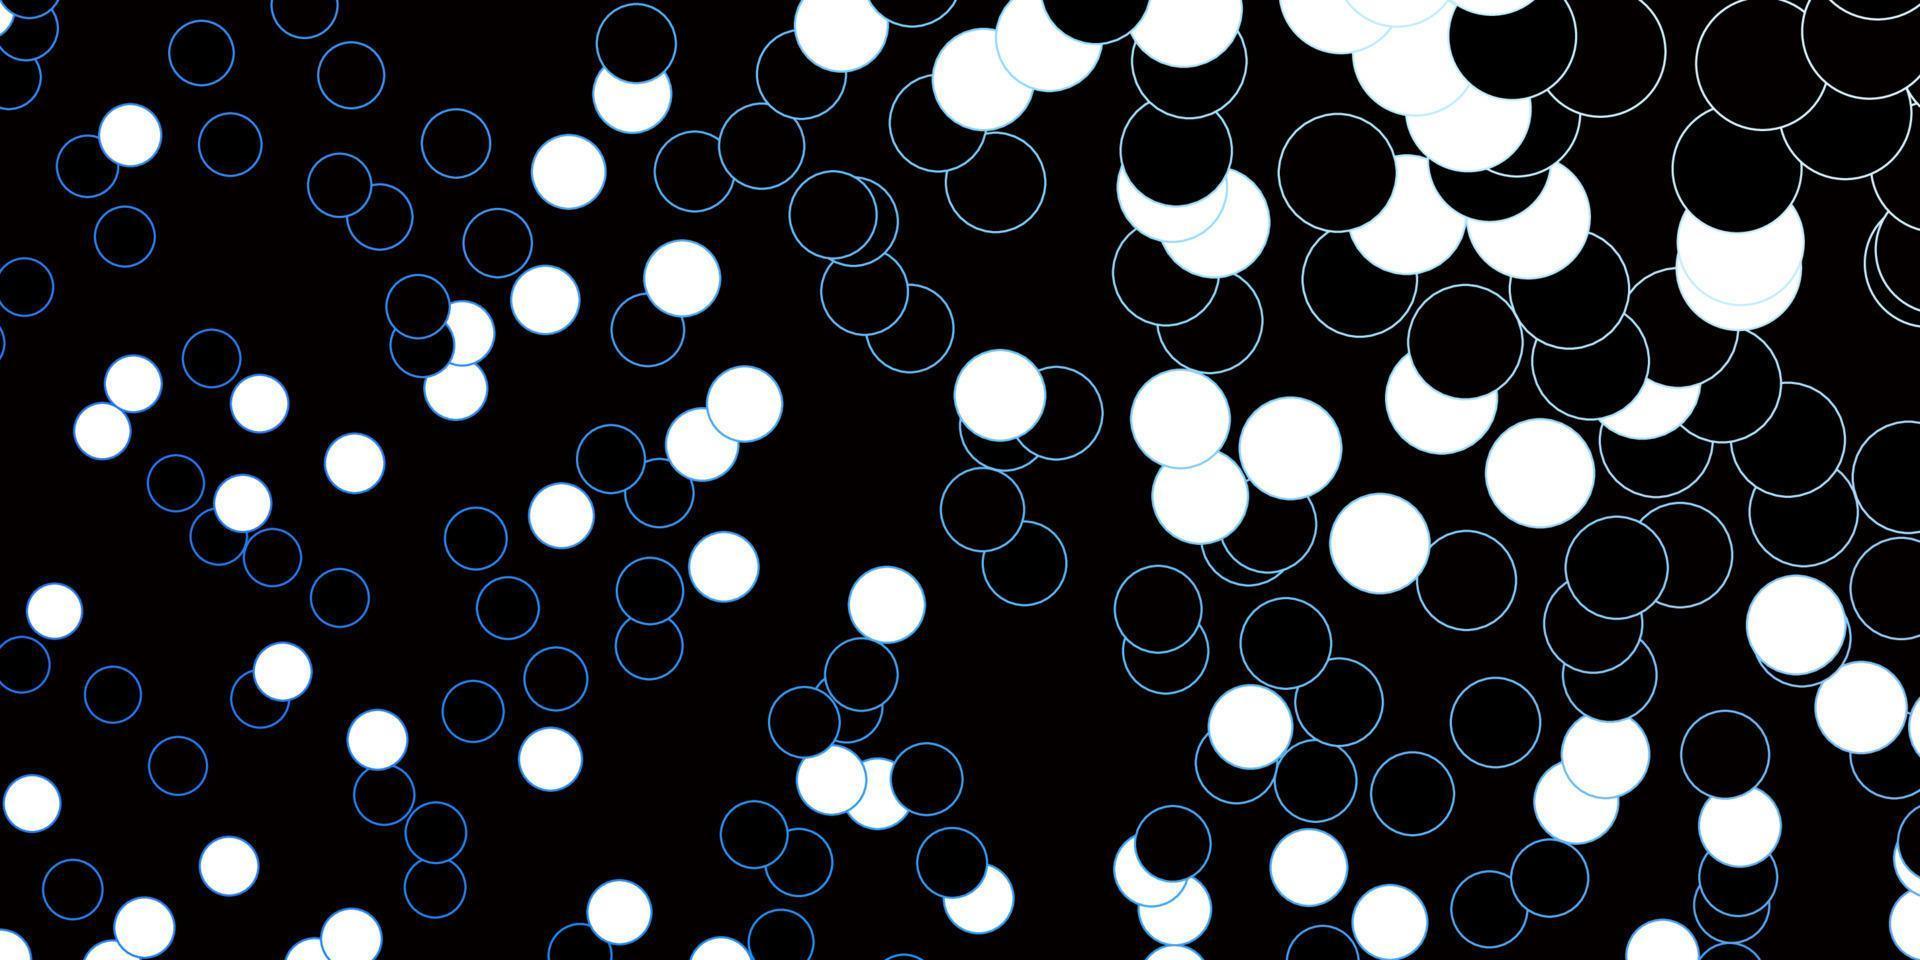 mörkblå vektorbakgrund med bubblor. vektor